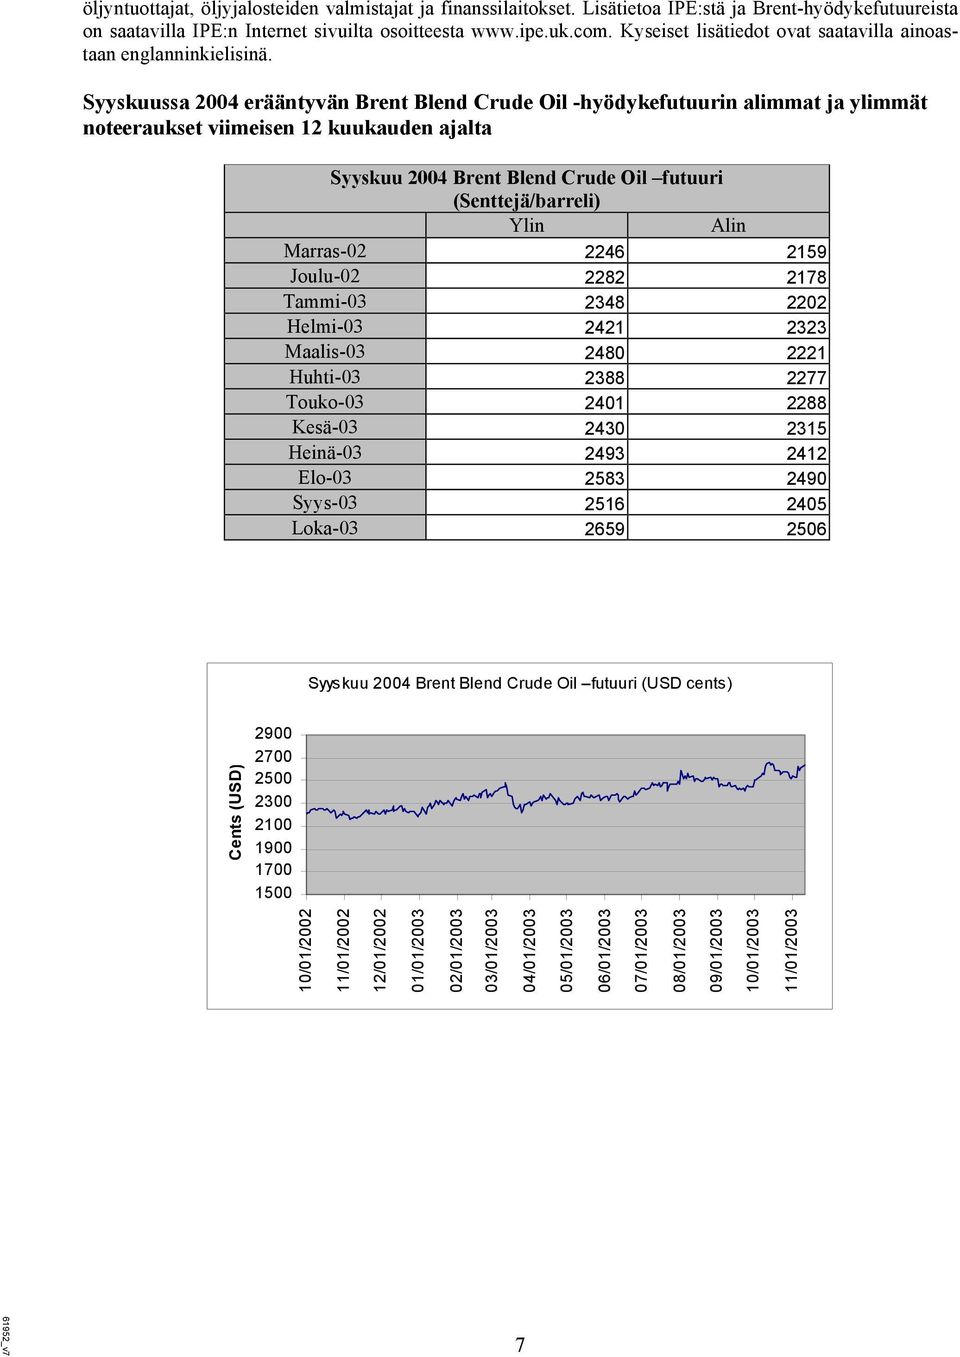 Syyskuussa 2004 erääntyvän Brent Blend Crude Oil -hyödykefutuurin alimmat ja ylimmät noteeraukset viimeisen 12 kuukauden ajalta Syyskuu 2004 Brent Blend Crude Oil futuuri (Senttejä/barreli) Ylin Alin